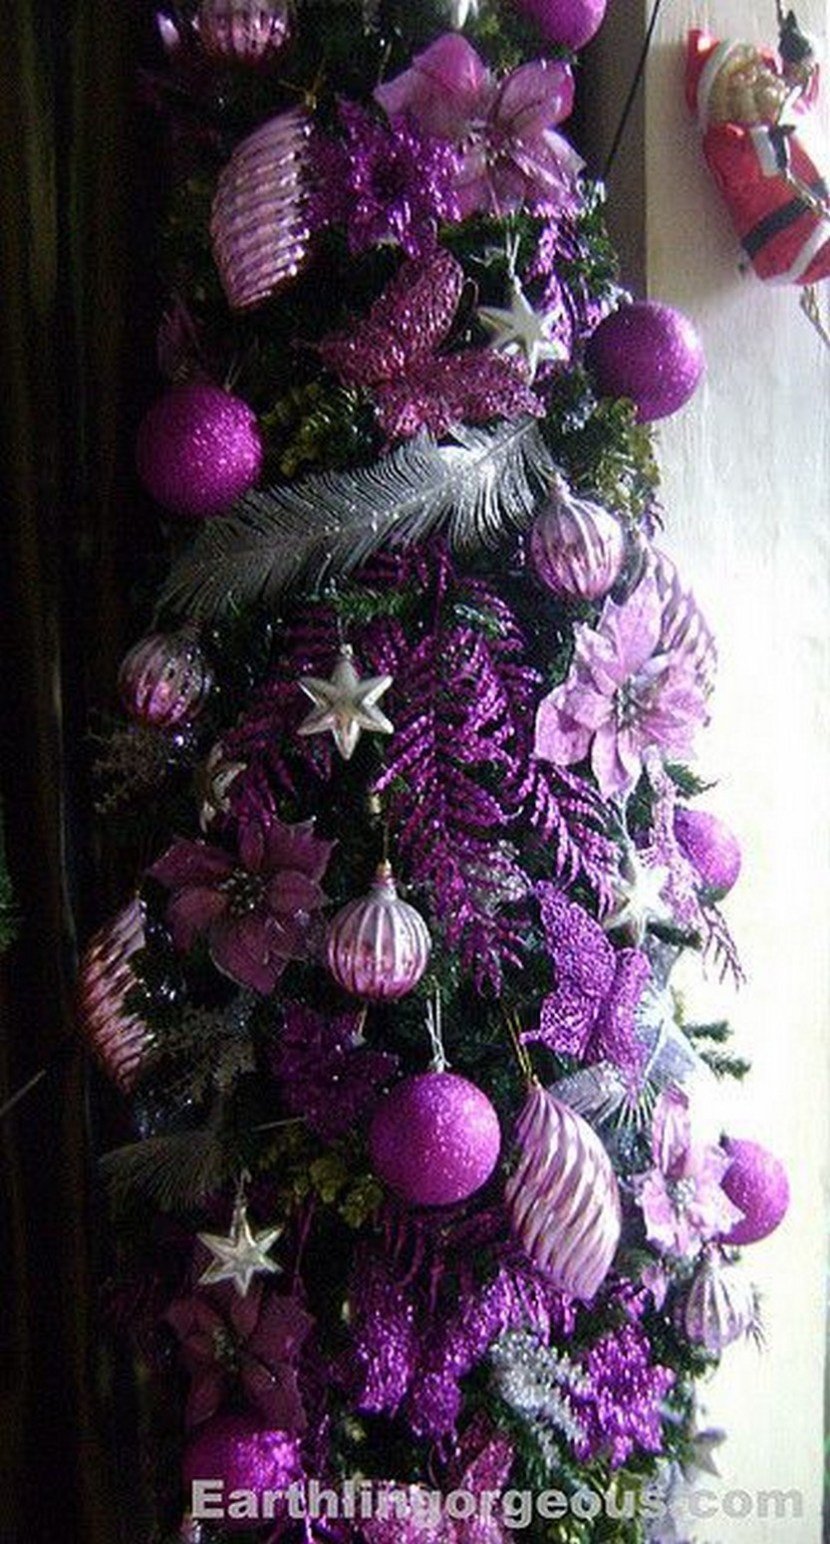 Новогодний декор в фиолетовом цвете